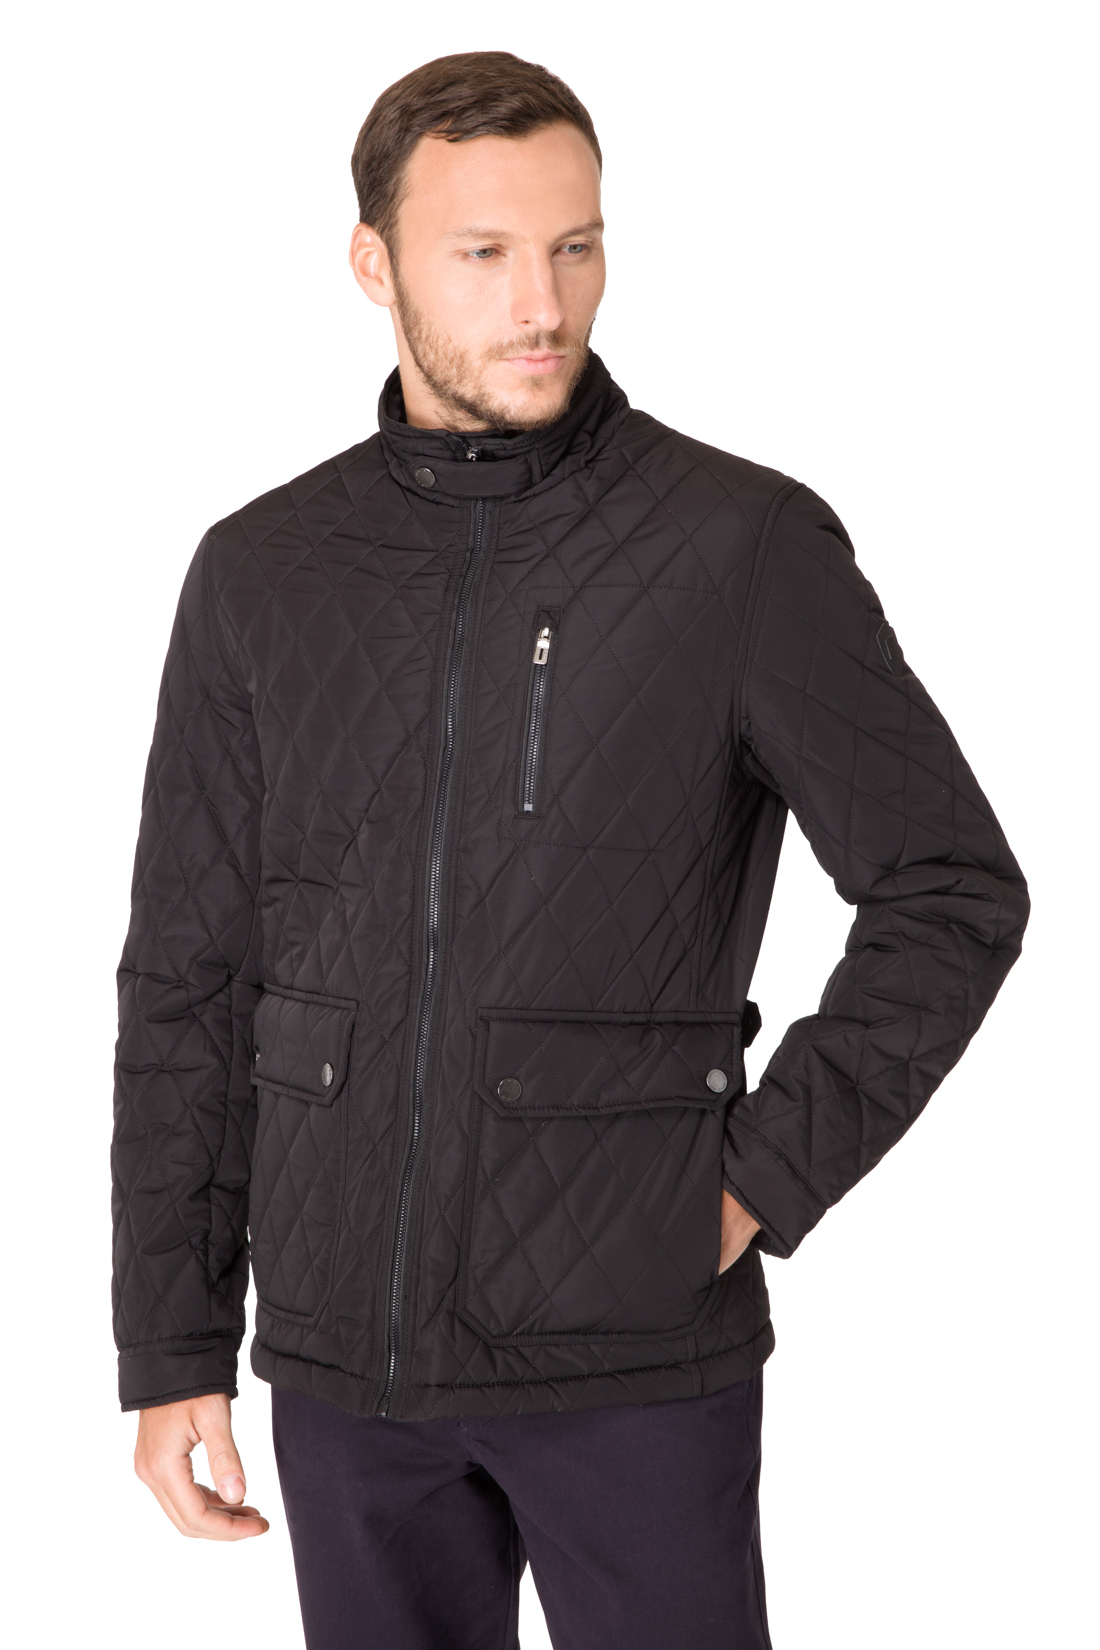 Стёганая куртка с воротником-стойкой (арт. baon B537017), размер M, цвет черный Стёганая куртка с воротником-стойкой (арт. baon B537017) - фото 1